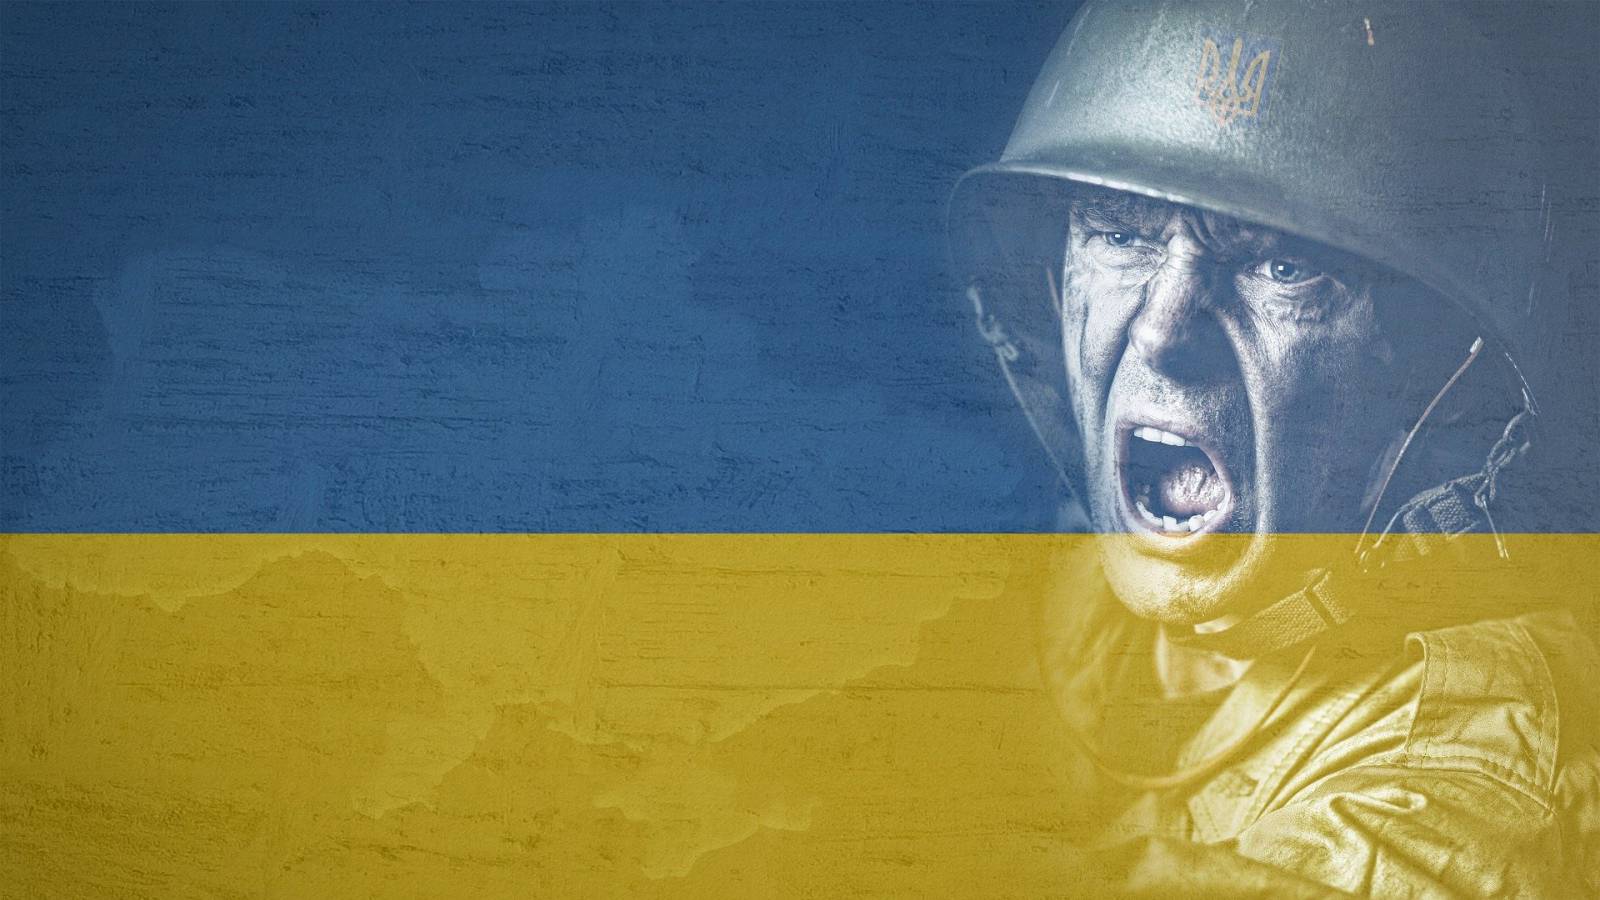 Krig i Ukraine. Rusland trækker hundredvis af militærkøretøjer tilbage nær Kiev, artilleriangreb stiger